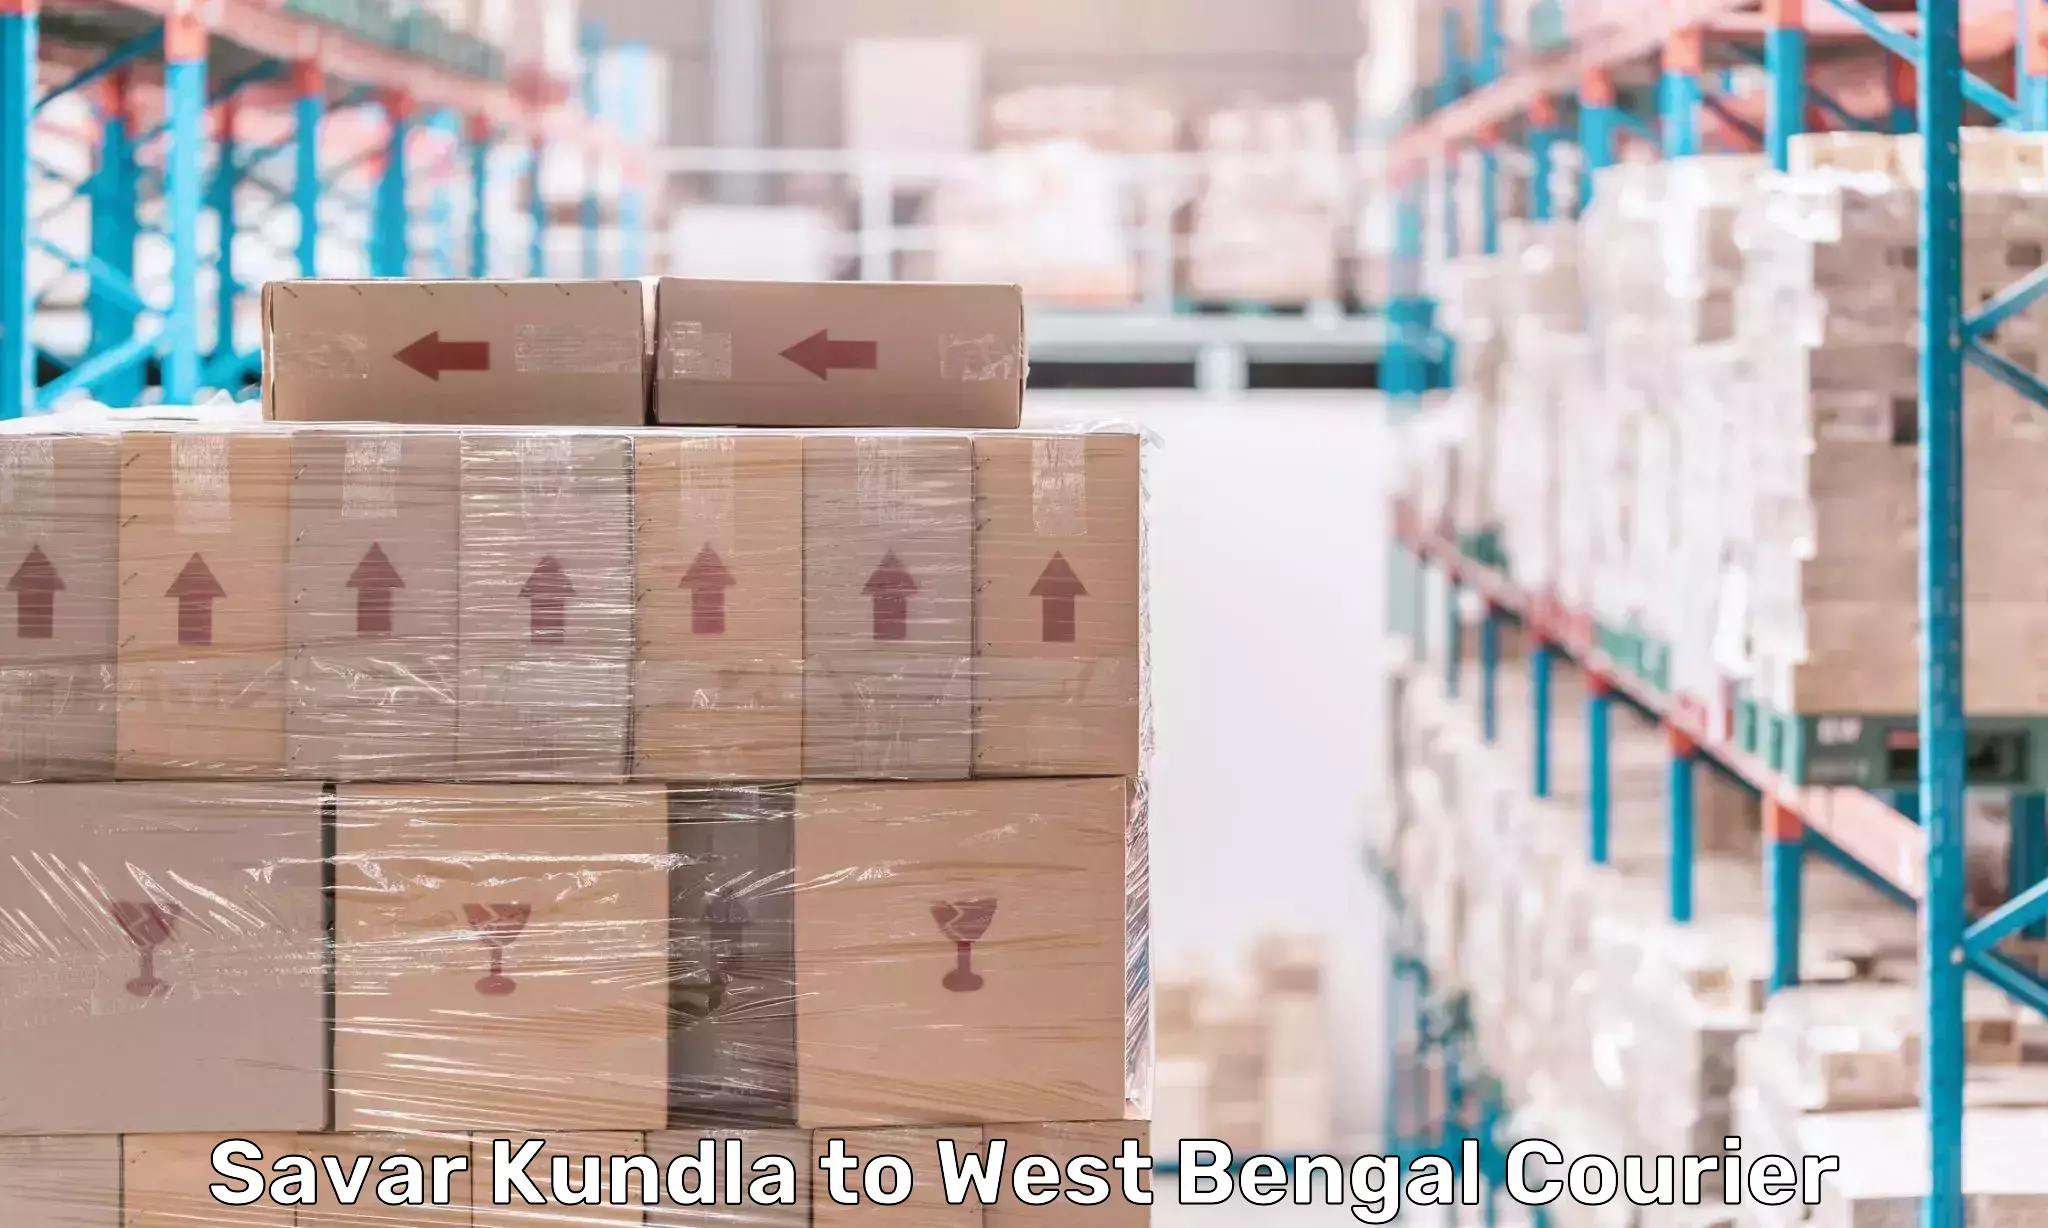 Efficient order fulfillment Savar Kundla to West Bengal